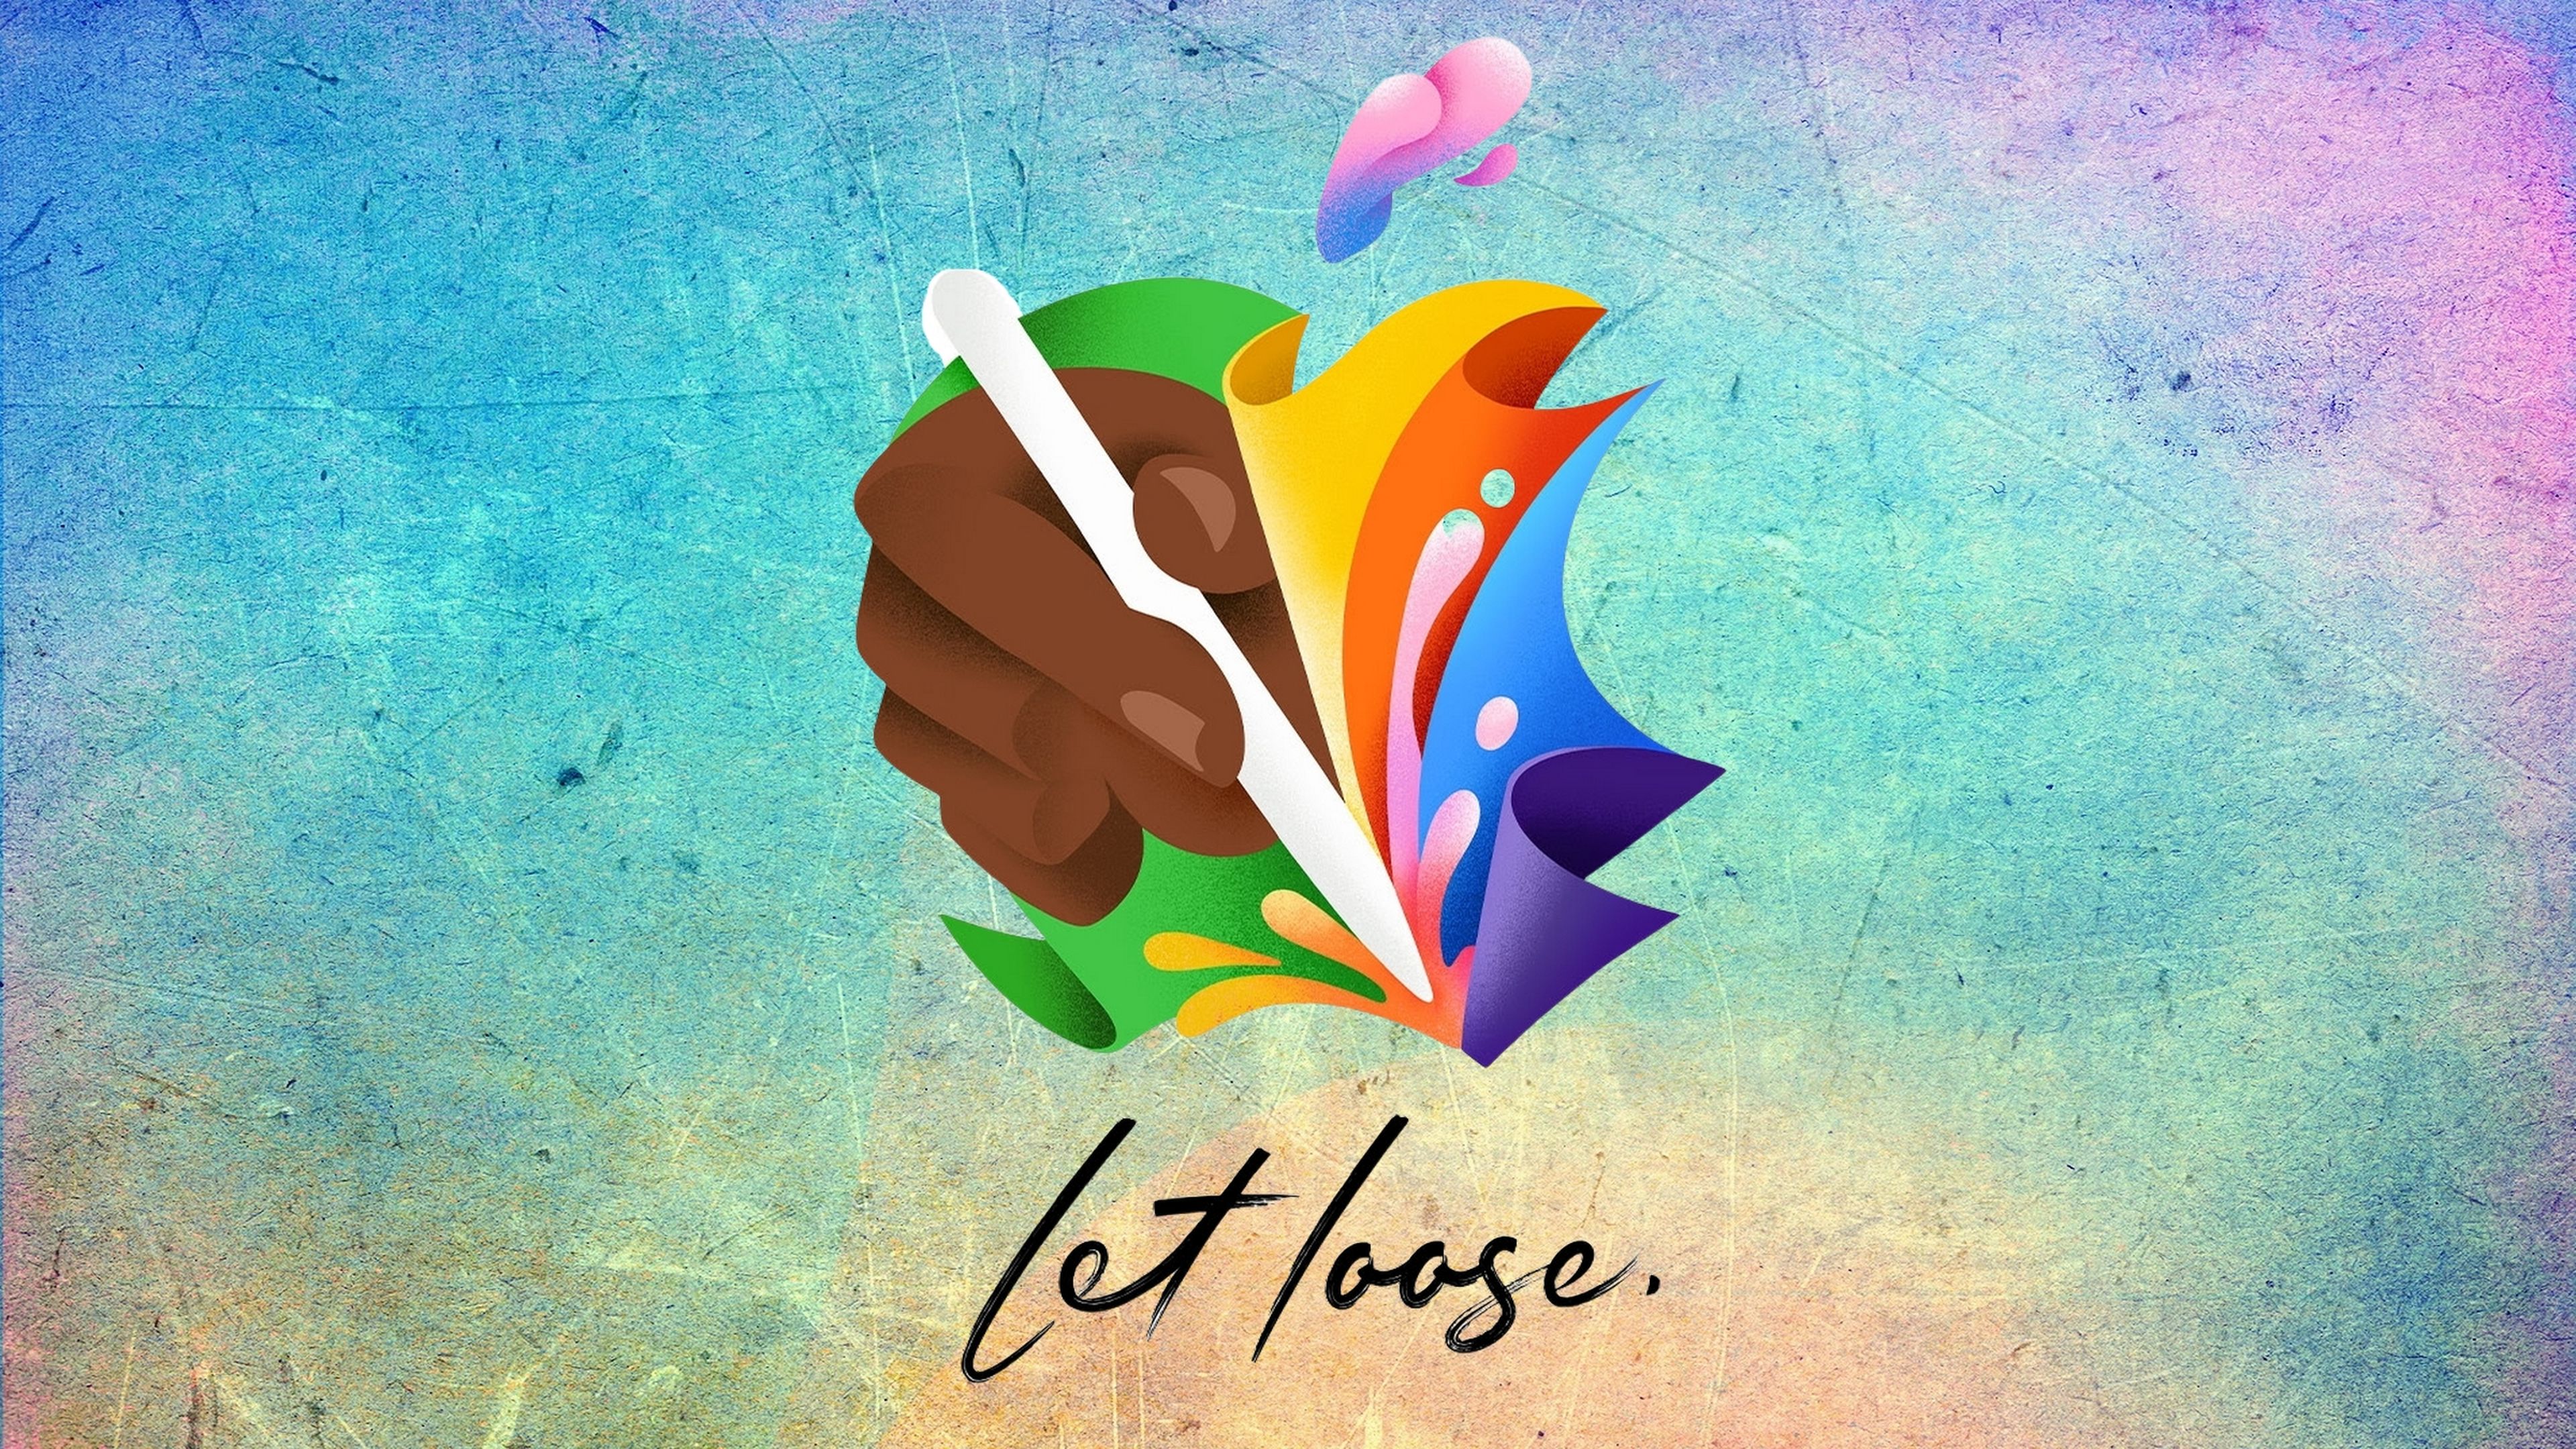 Apple anuncia el evento 'Let Loose' para el 7 de mayo, te contamos lo que presentará